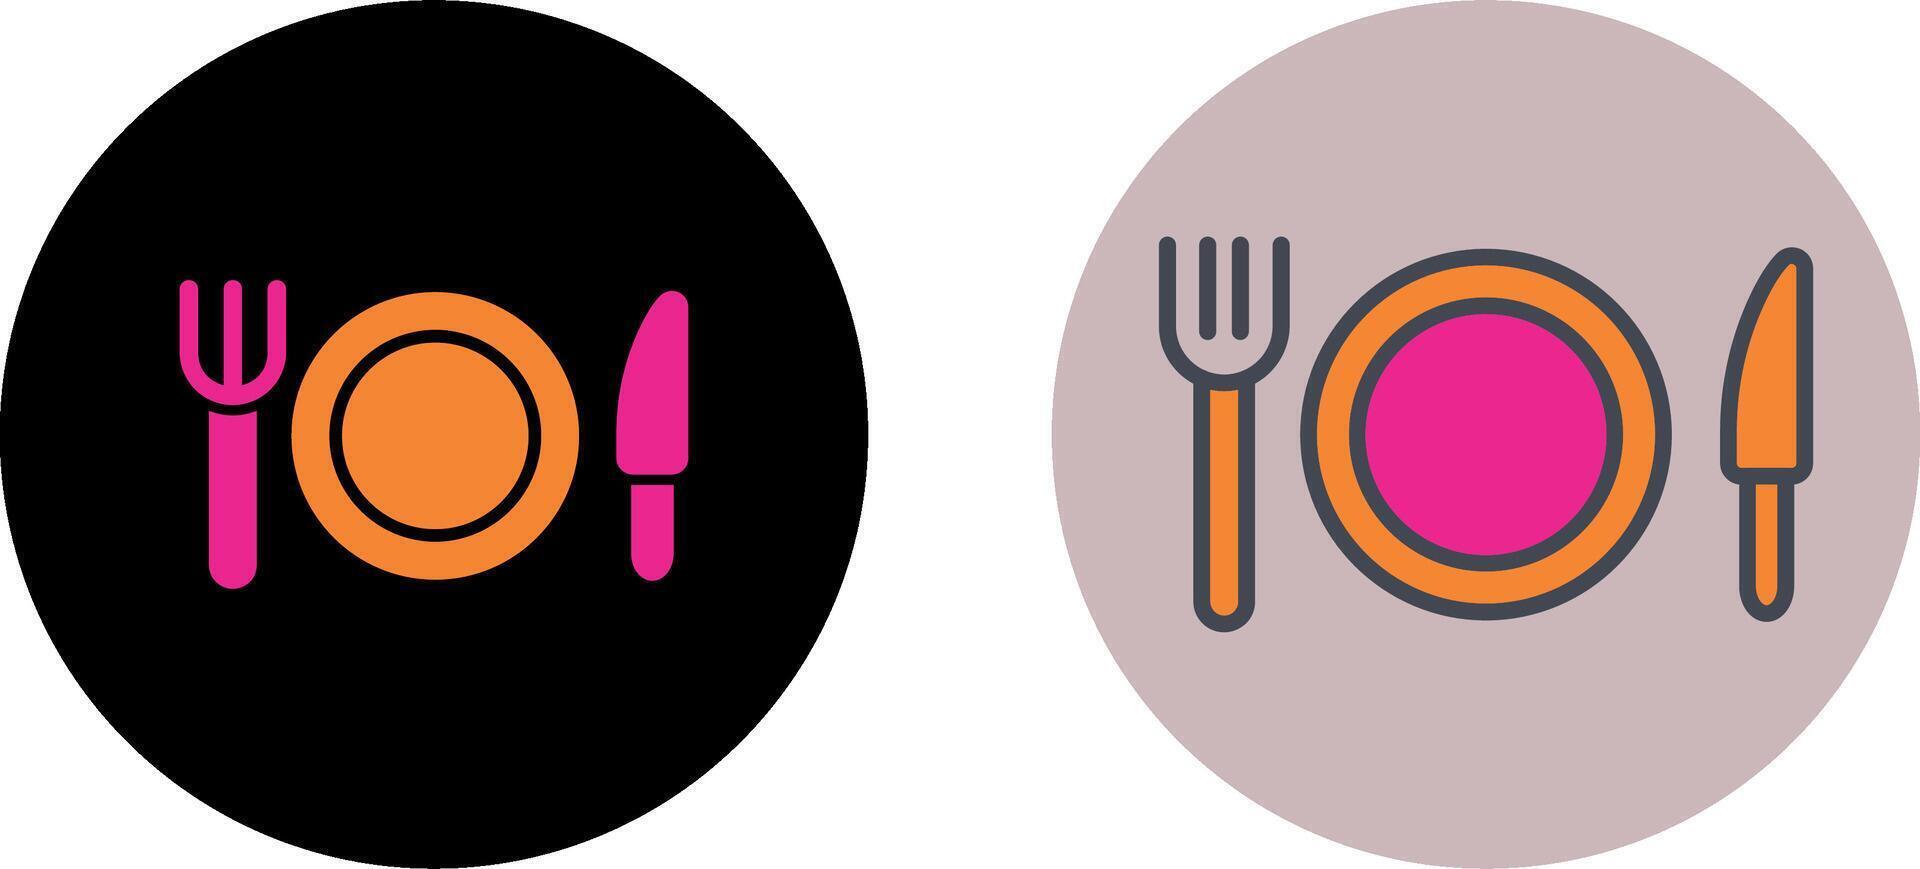 Food Icon Design vector